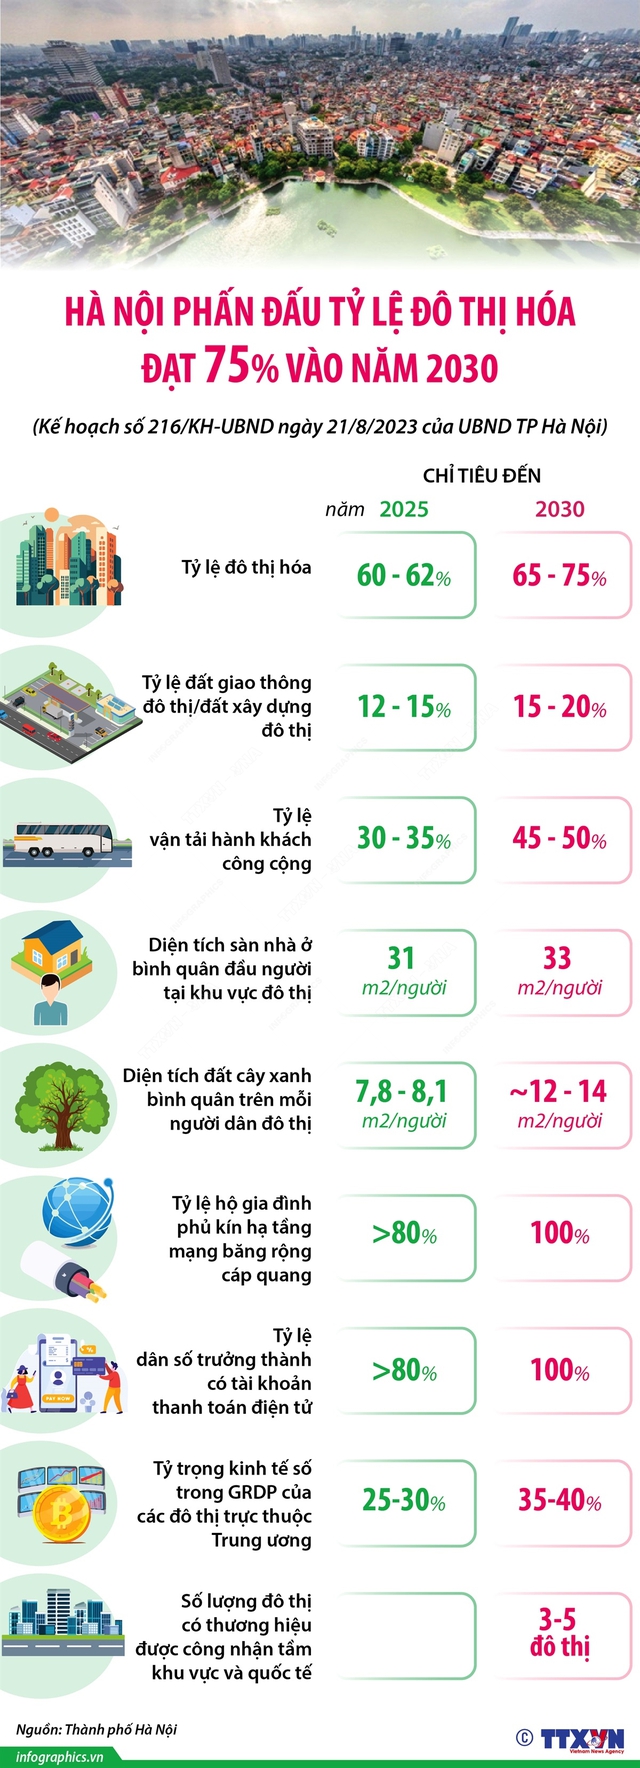 69 năm giải phóng Thủ đô: Hà Nội phấn đấu tỷ lệ đô thị hóa đạt 75% vào năm 2030 - Ảnh 1.